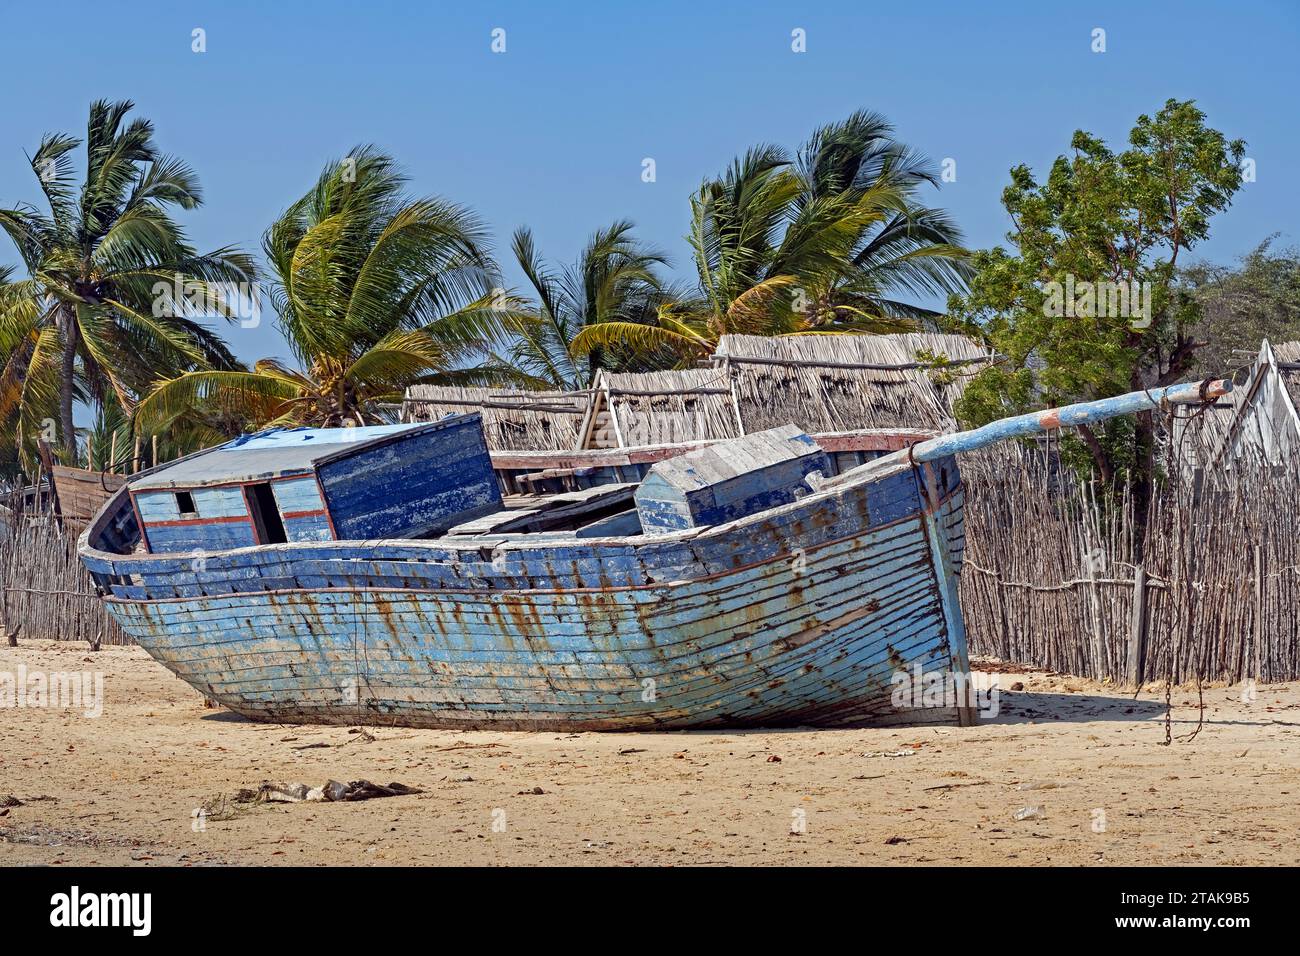 Vieux bateau de pêche en bois bleu sur la plage de sable au village côtier Belo sur Mer, district de Morondava, région de Menabe, Madagascar Banque D'Images